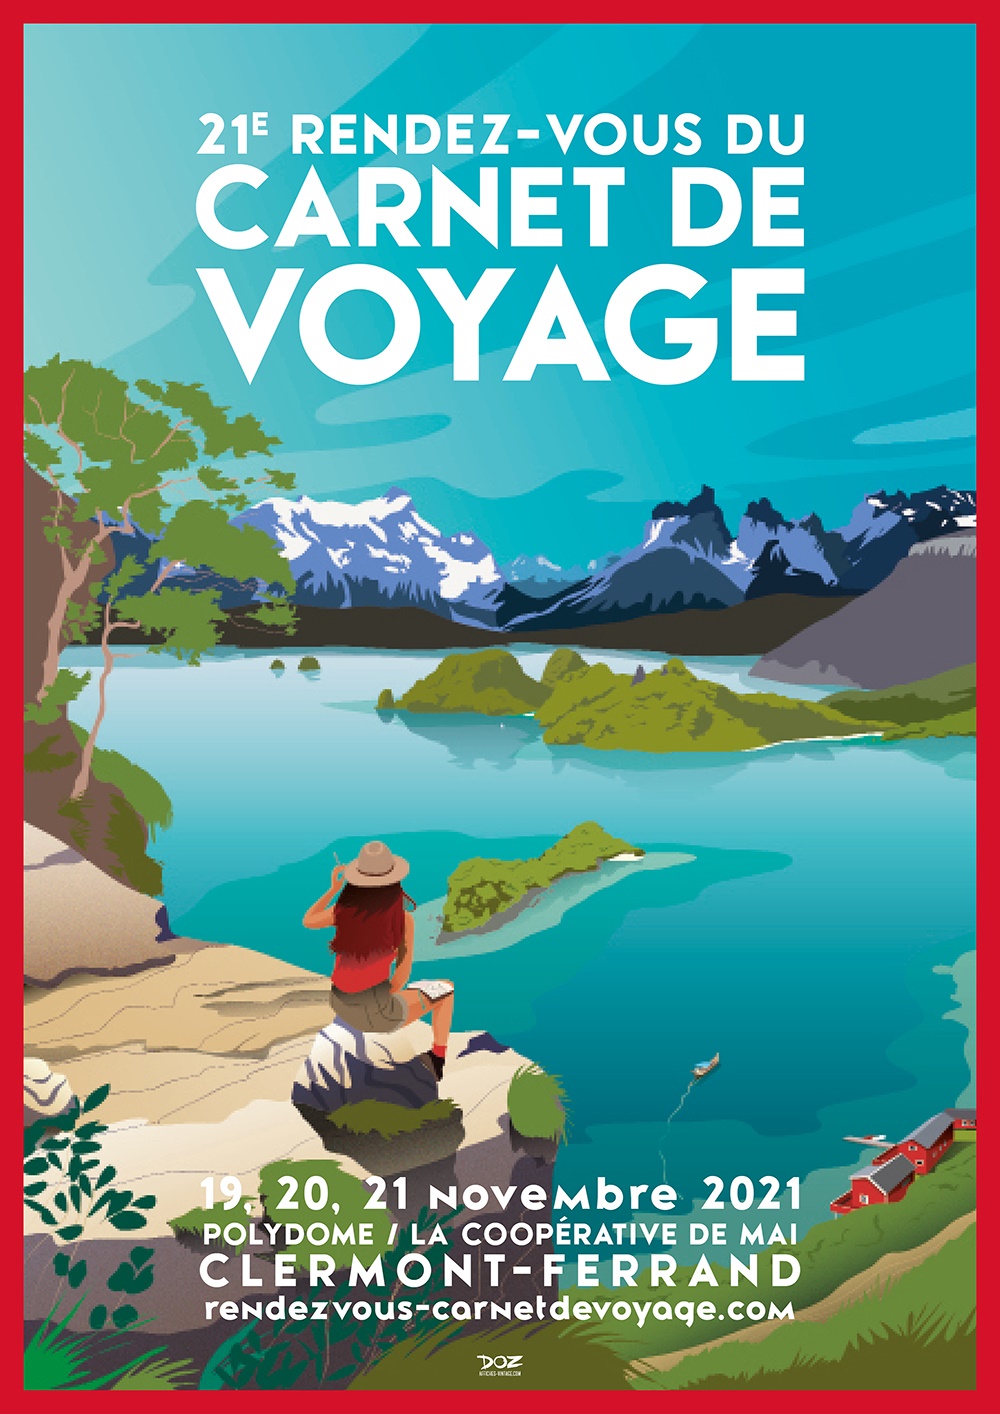 Le Rendez-vous du Carnet de Voyage revient en 2021 !